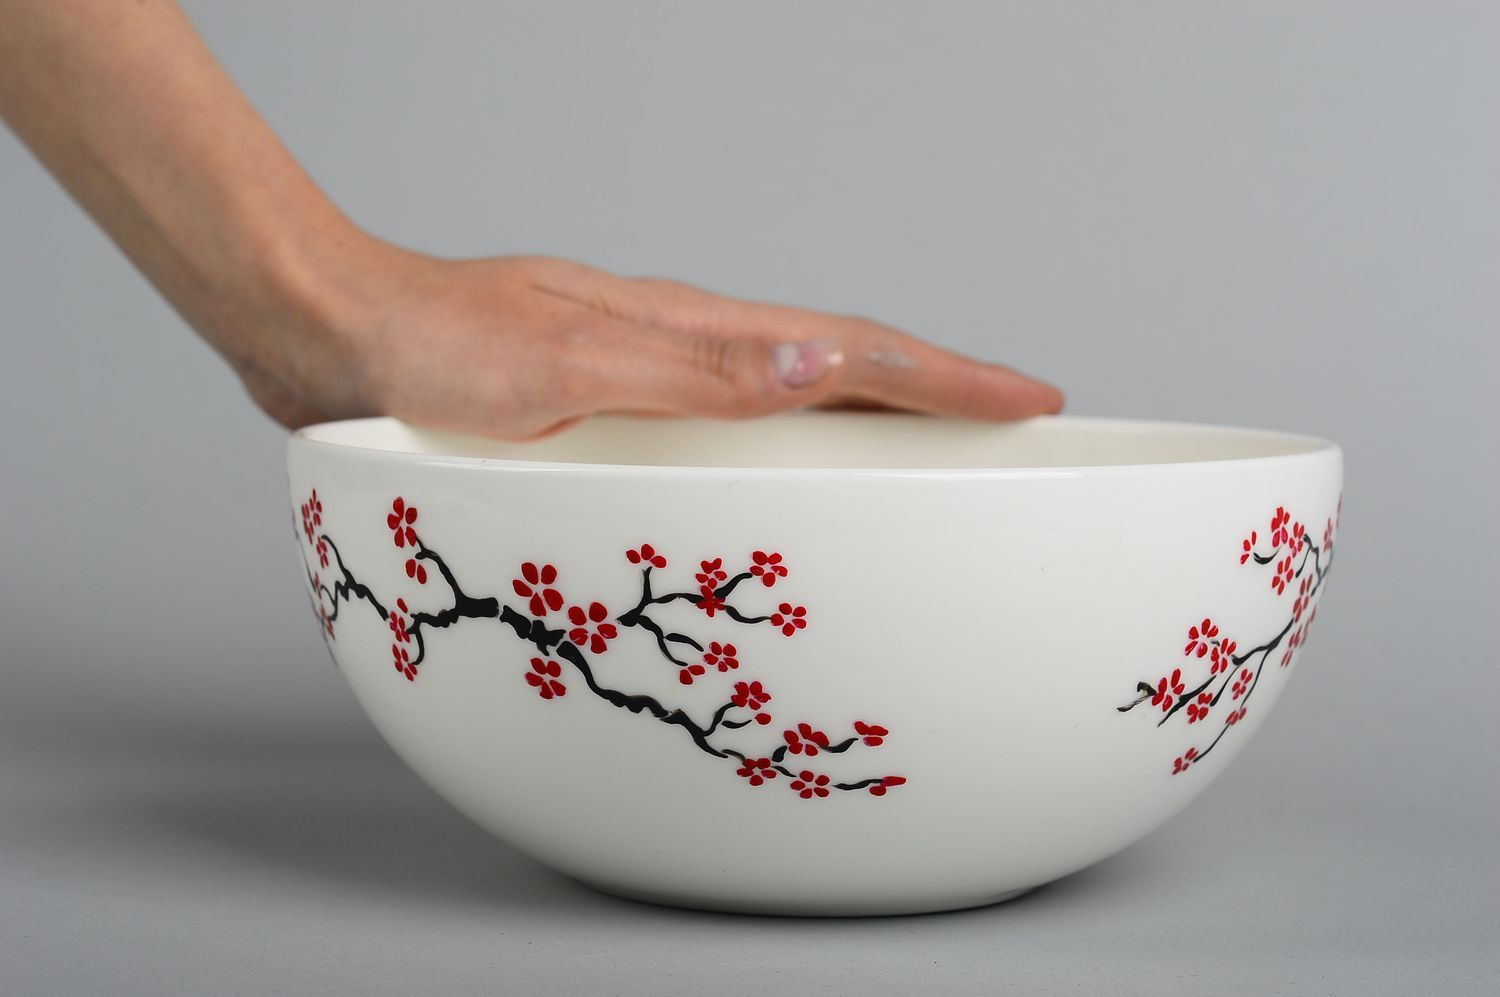 Глубокая тарелка ручной работы посуда для кухни с цветочками глиняная посуда фото 2